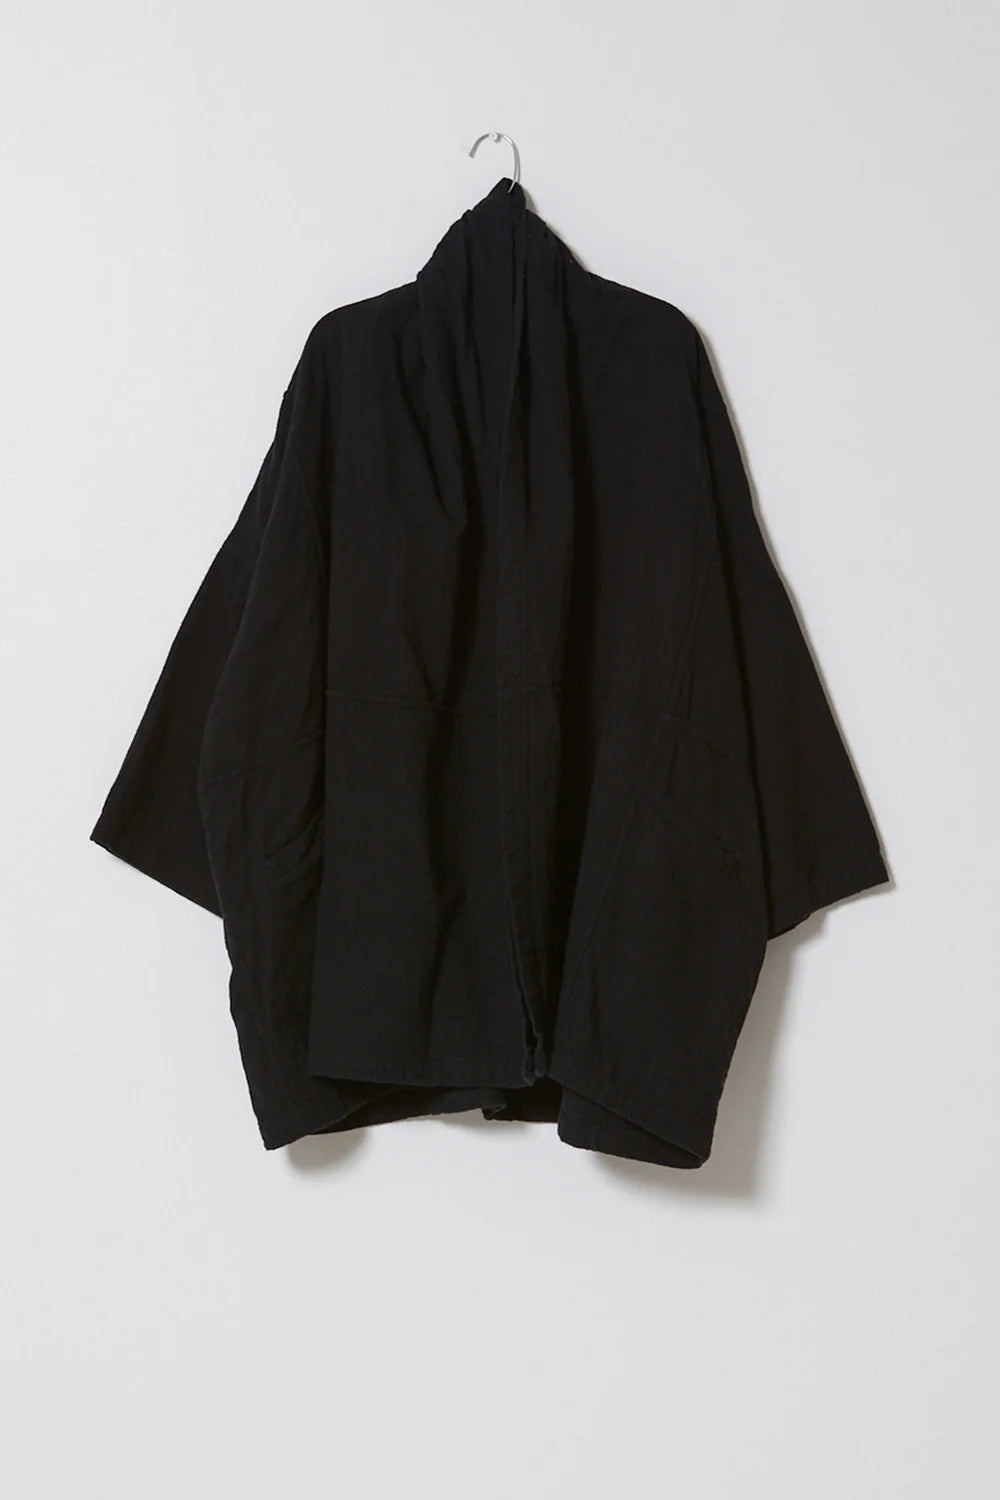 Atelier Delphine Haori Coat - Black